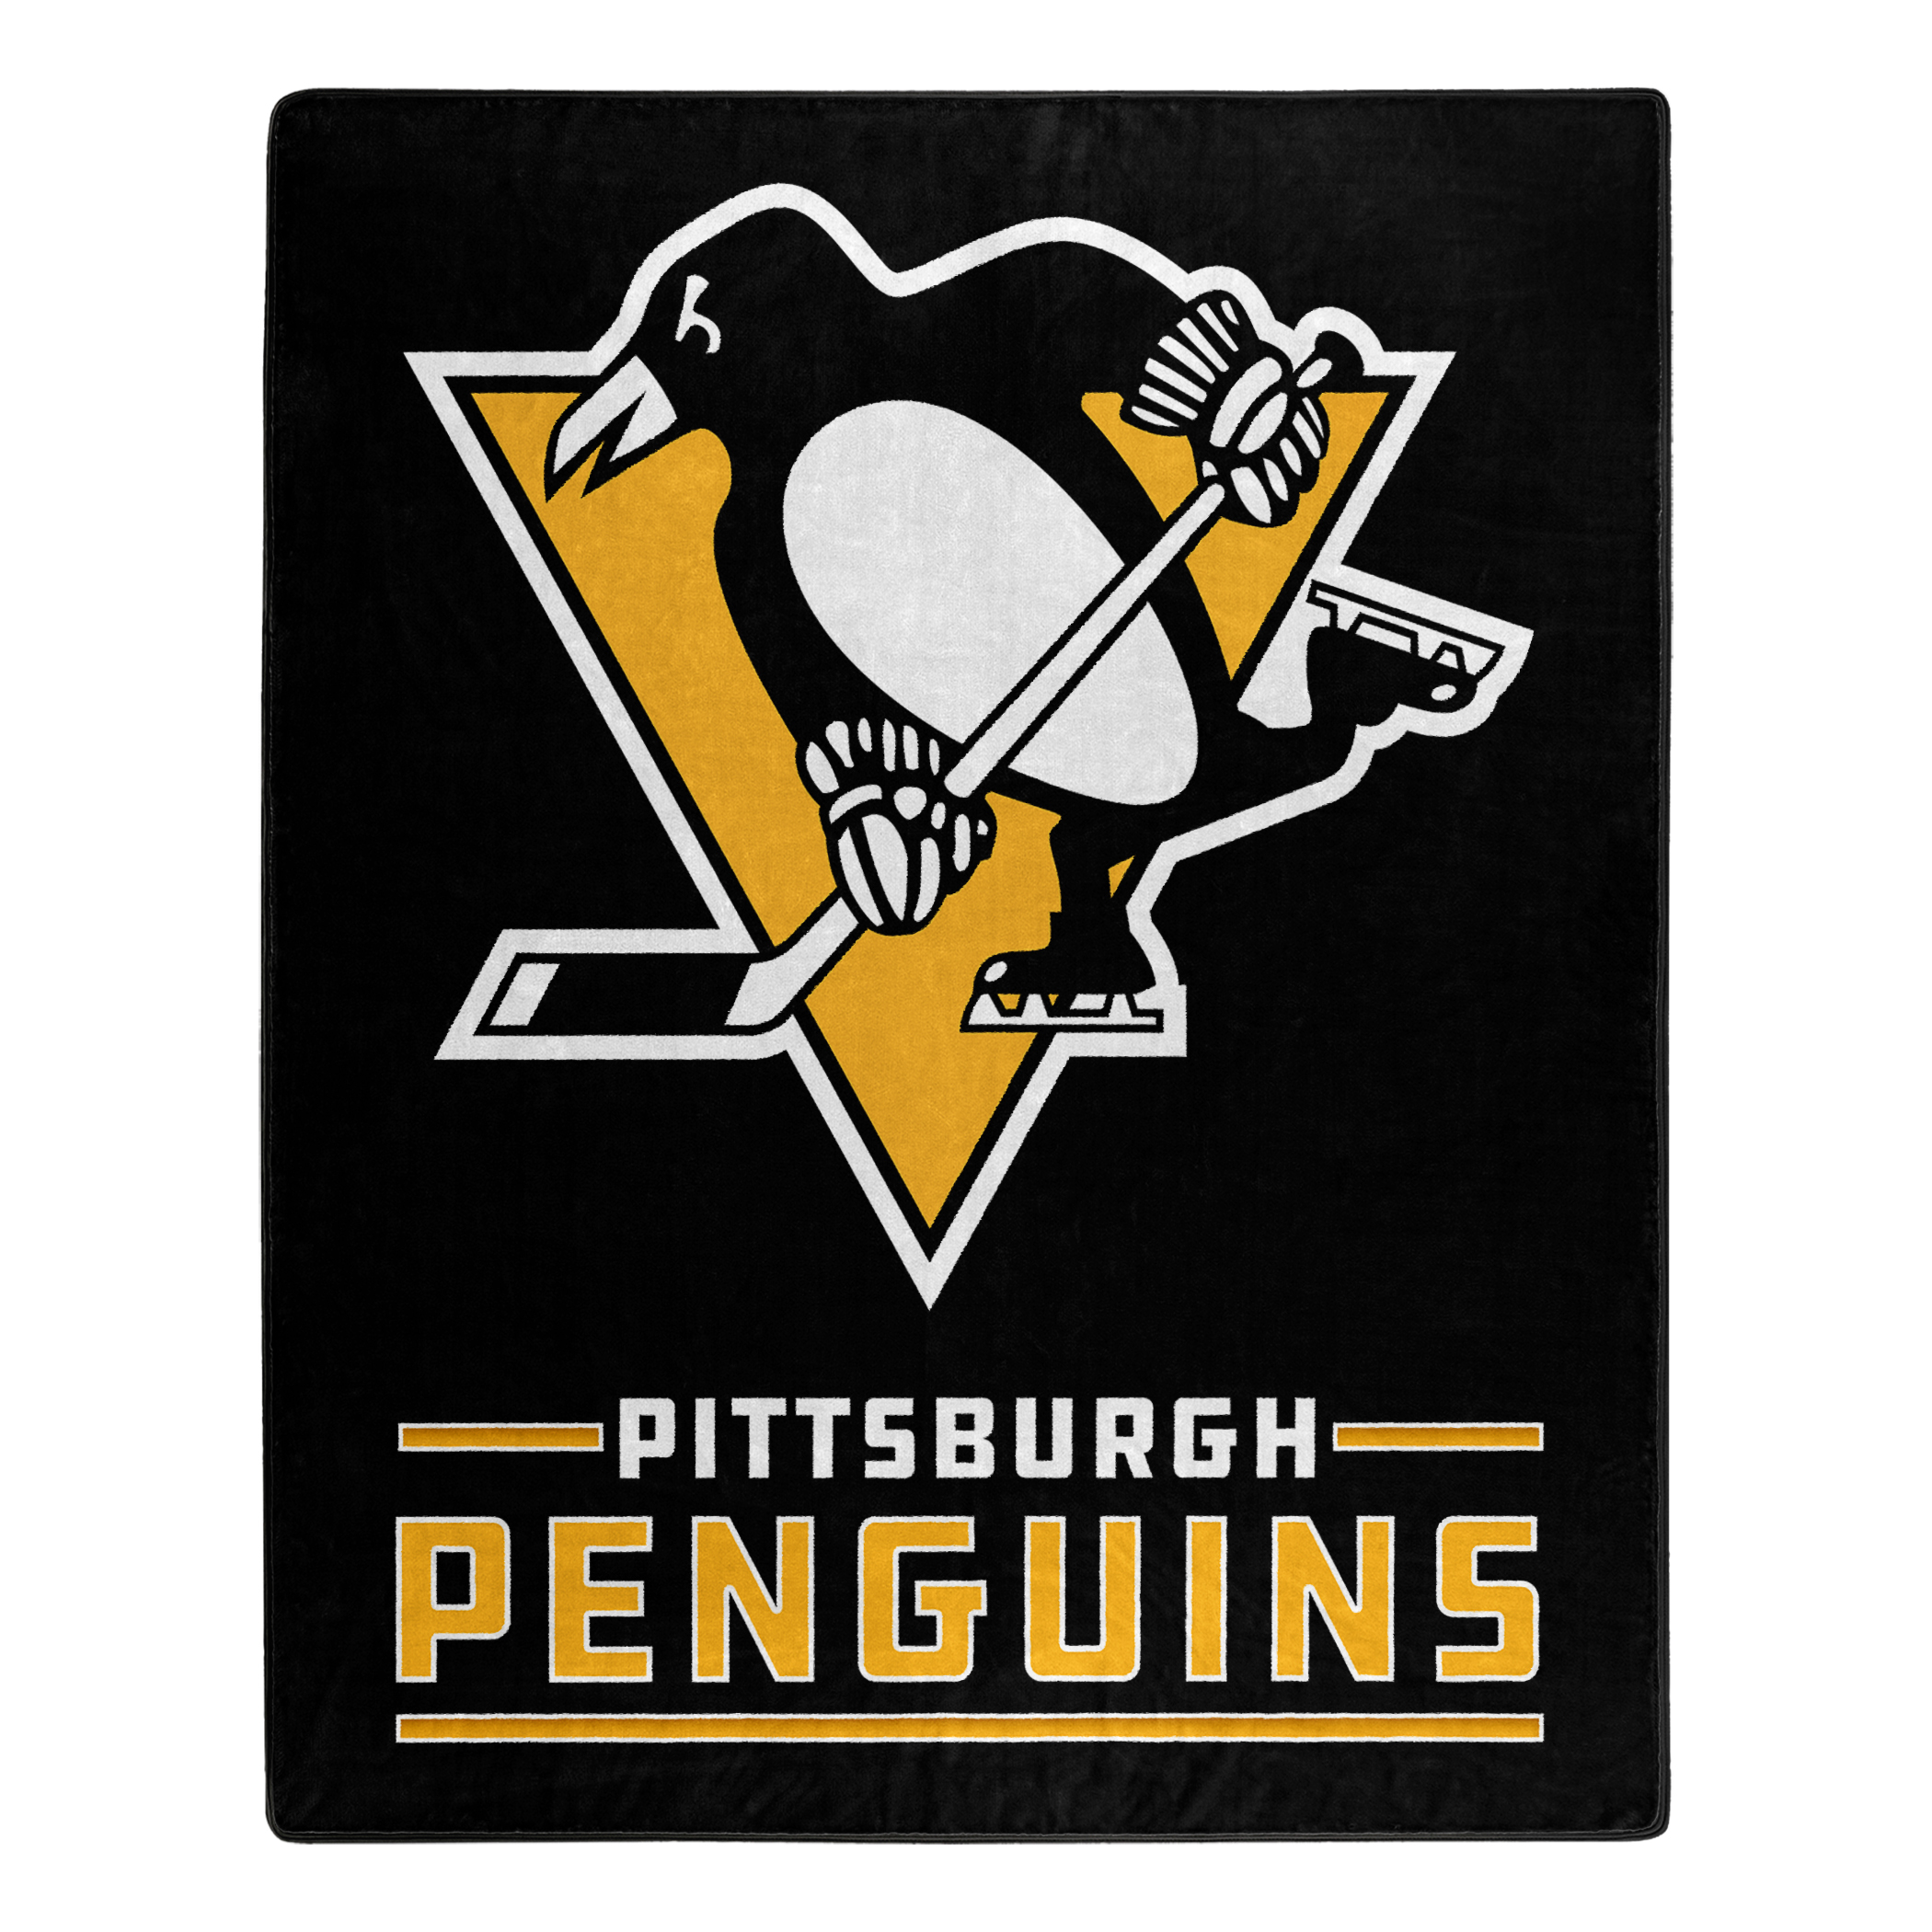 Хк питтсбург. Питтсбург Пингвинз. Эмблема хк Питтсбург Пингвинз. Хк Питтсбург Пингвинз логотип. Логотип Питтсбург Пингвинз НХЛ.